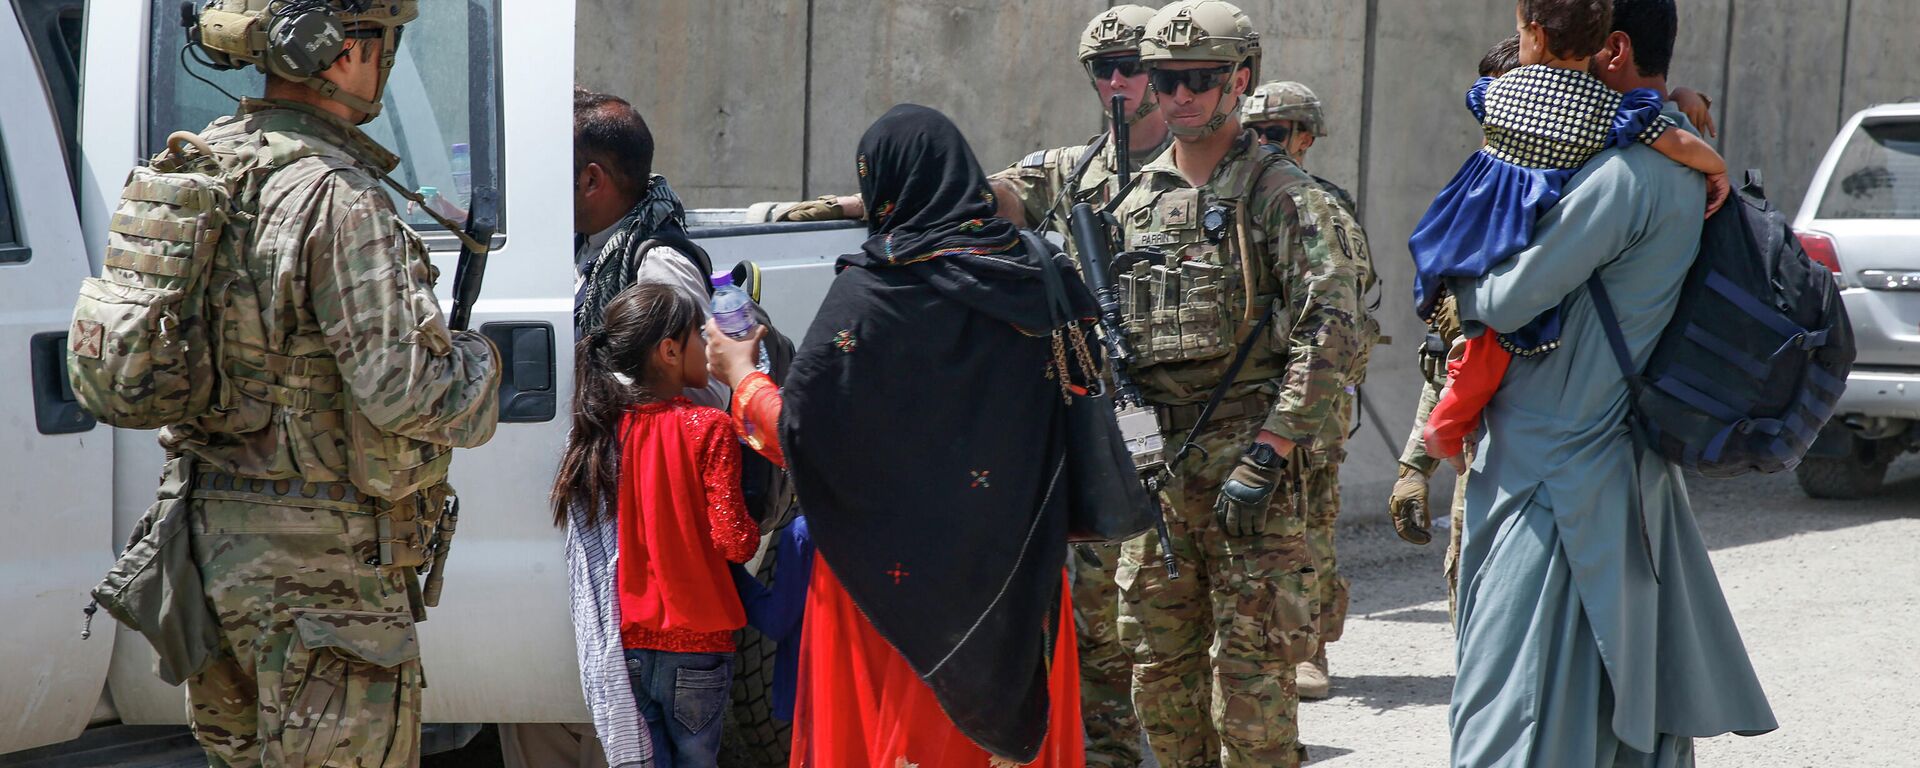 Unos soldados estadounidenses interactúan con ciudadanos afganos en Kabul el 20 de agosto de 2021 - Sputnik Mundo, 1920, 02.11.2021